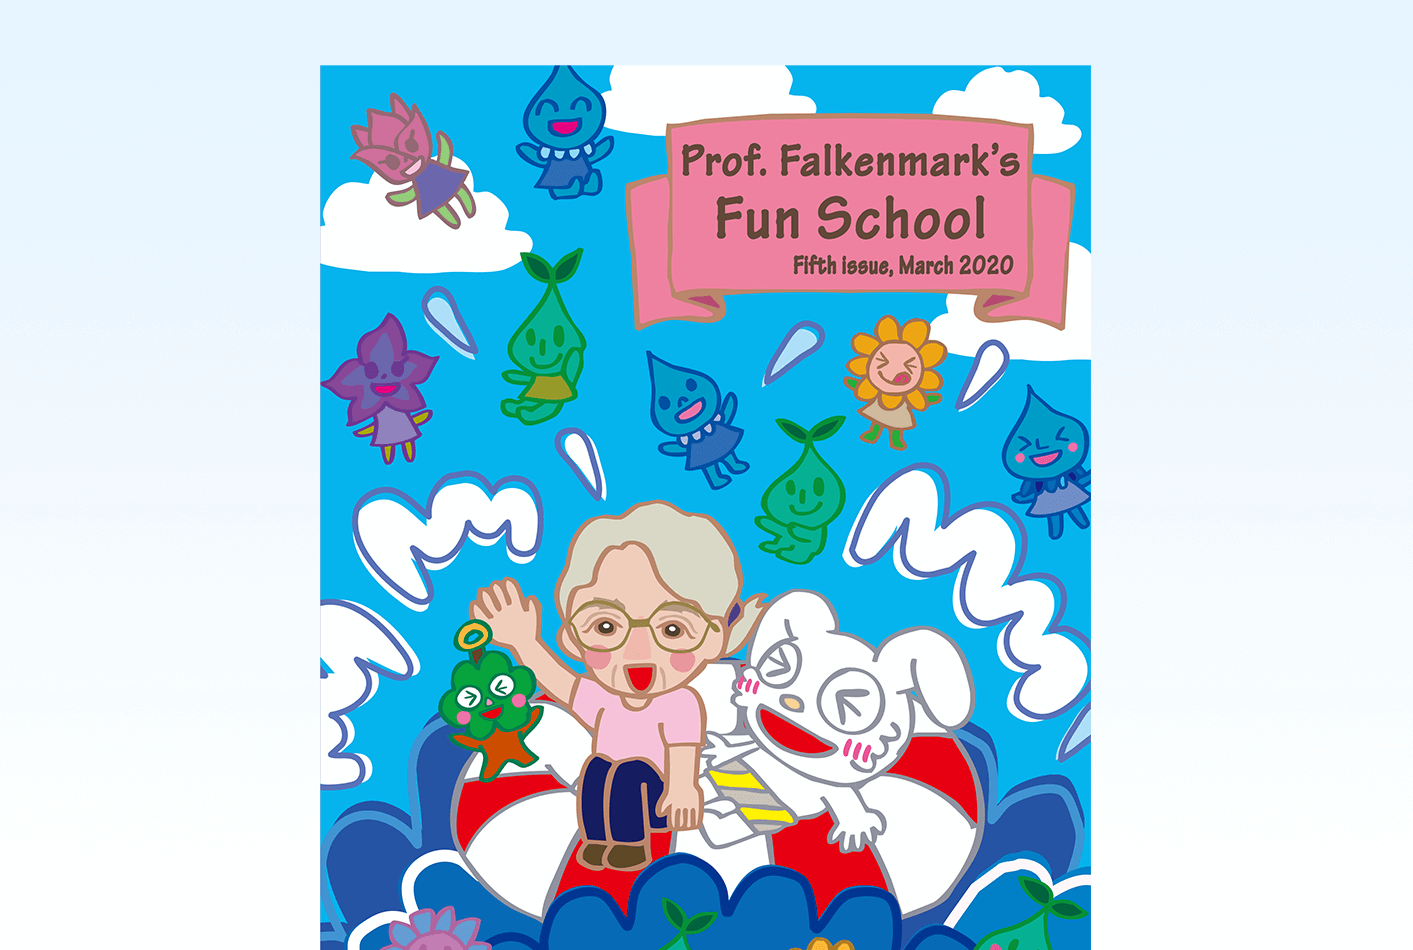 Prof. Falkenmark's Fun School